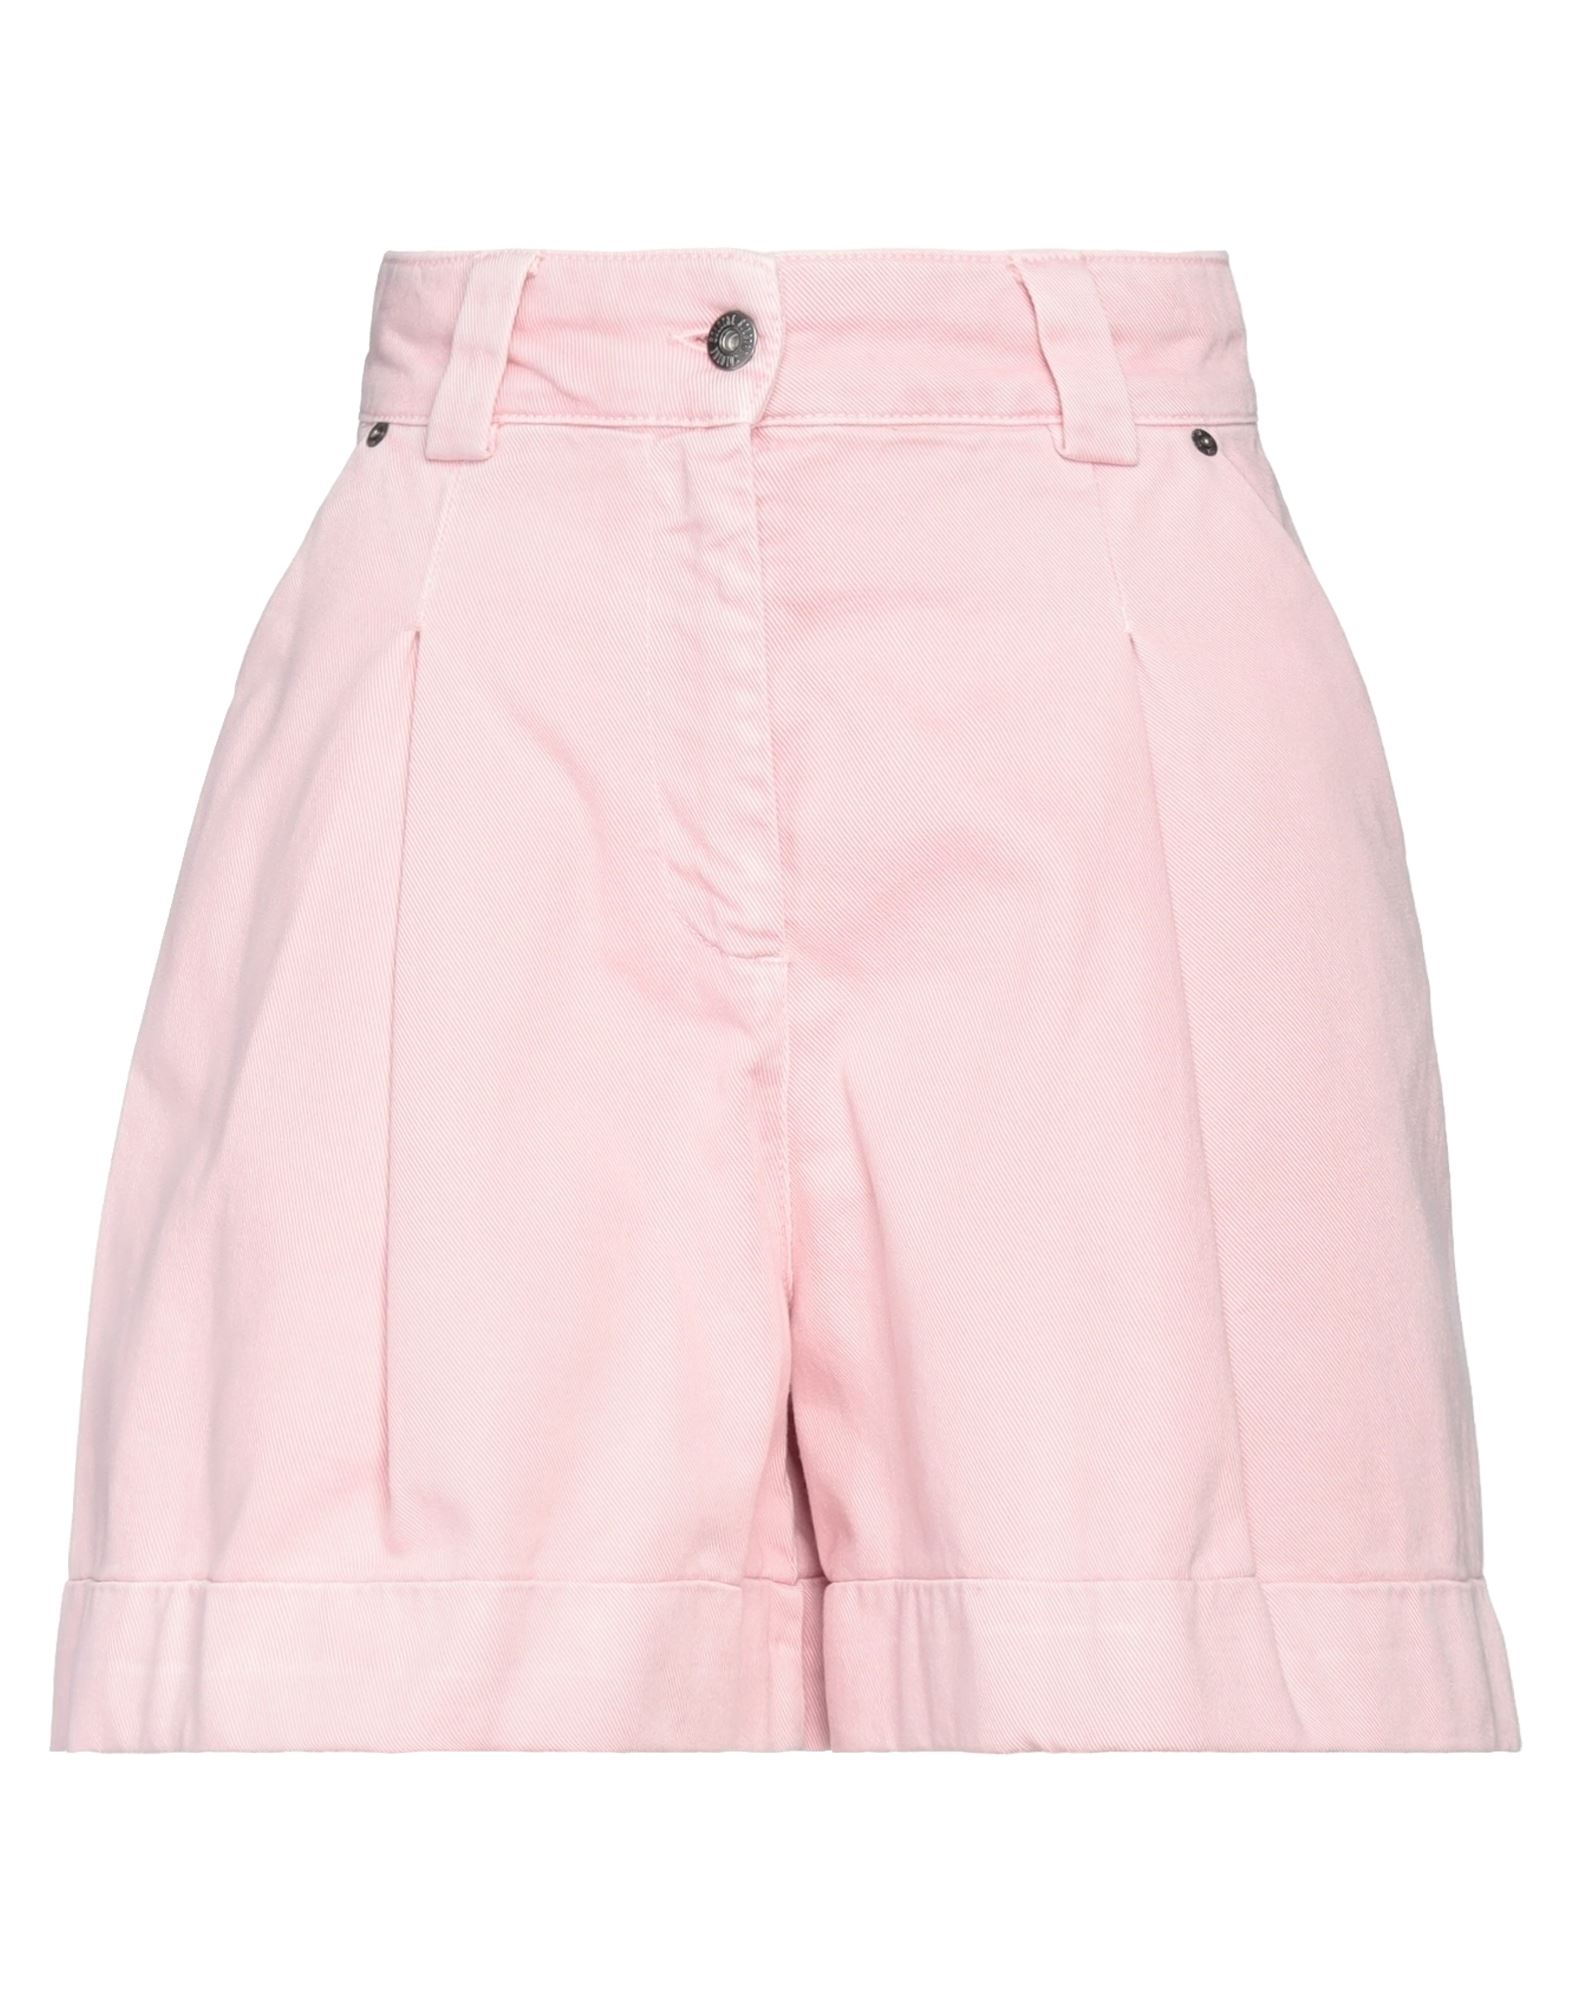 Solotre Woman Denim Shorts Pink Size 4 Cotton